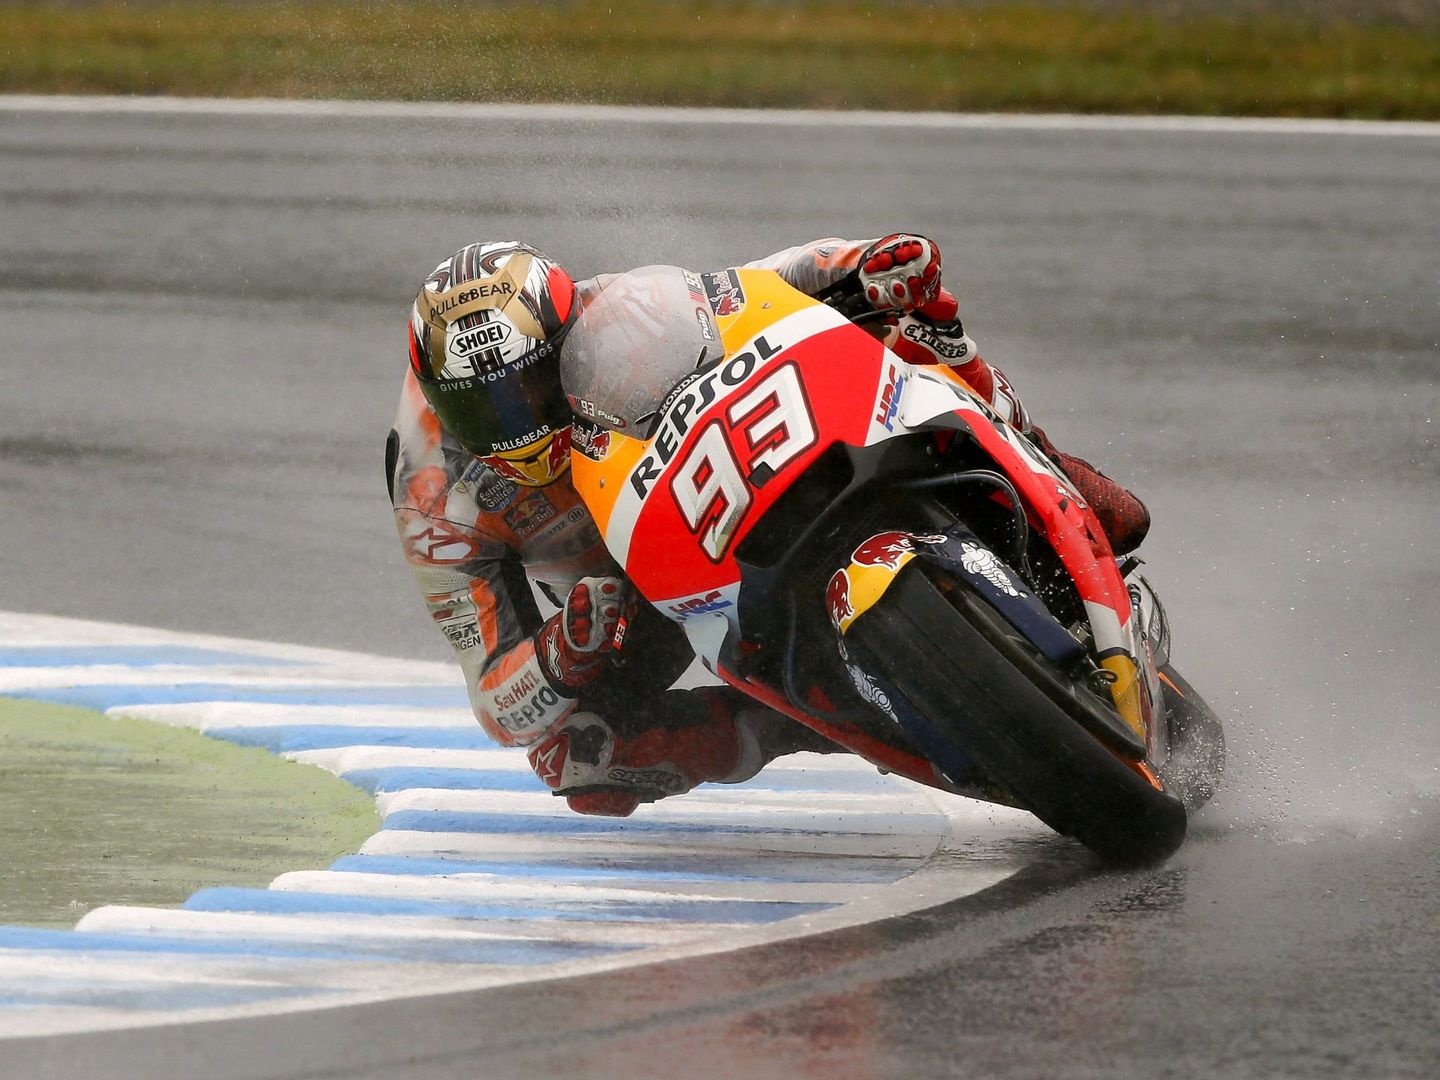 Marc Márquez explicó tras la carrera que tuvo problemas para parar bien la moto. (EFE)